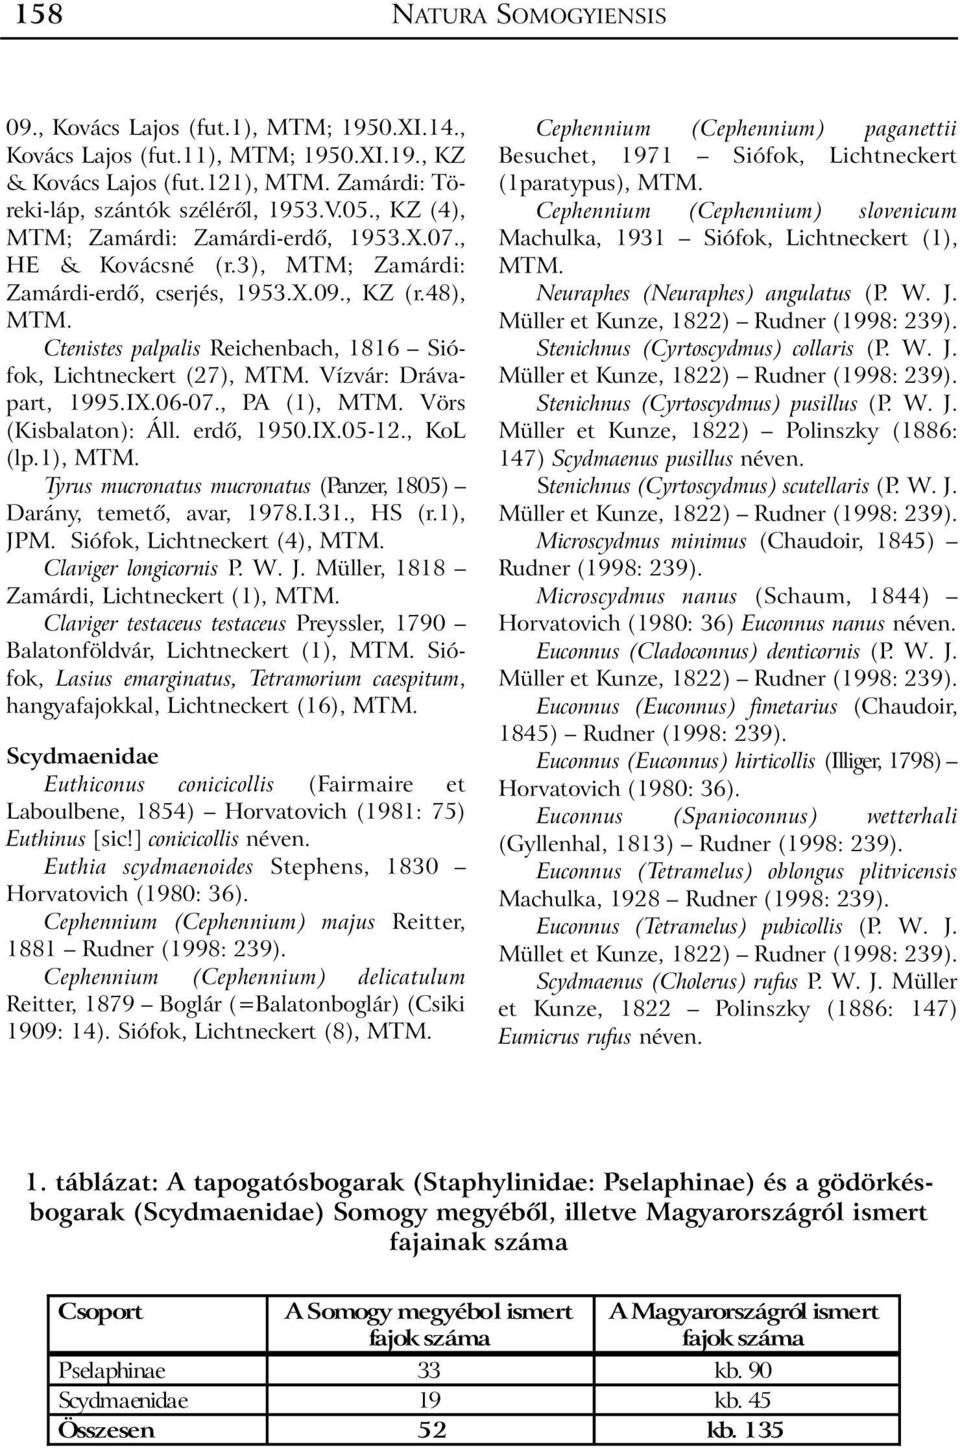 48), Ctenistes palpalis Reichenbach, 1816 Siófok, Lichtneckert (27), Vízvár: Drávapart, 1995.IX.06-07., PA (1), Vörs (Kisbalaton): Áll. erdõ, 1950.IX.05-12., KoL (lp.